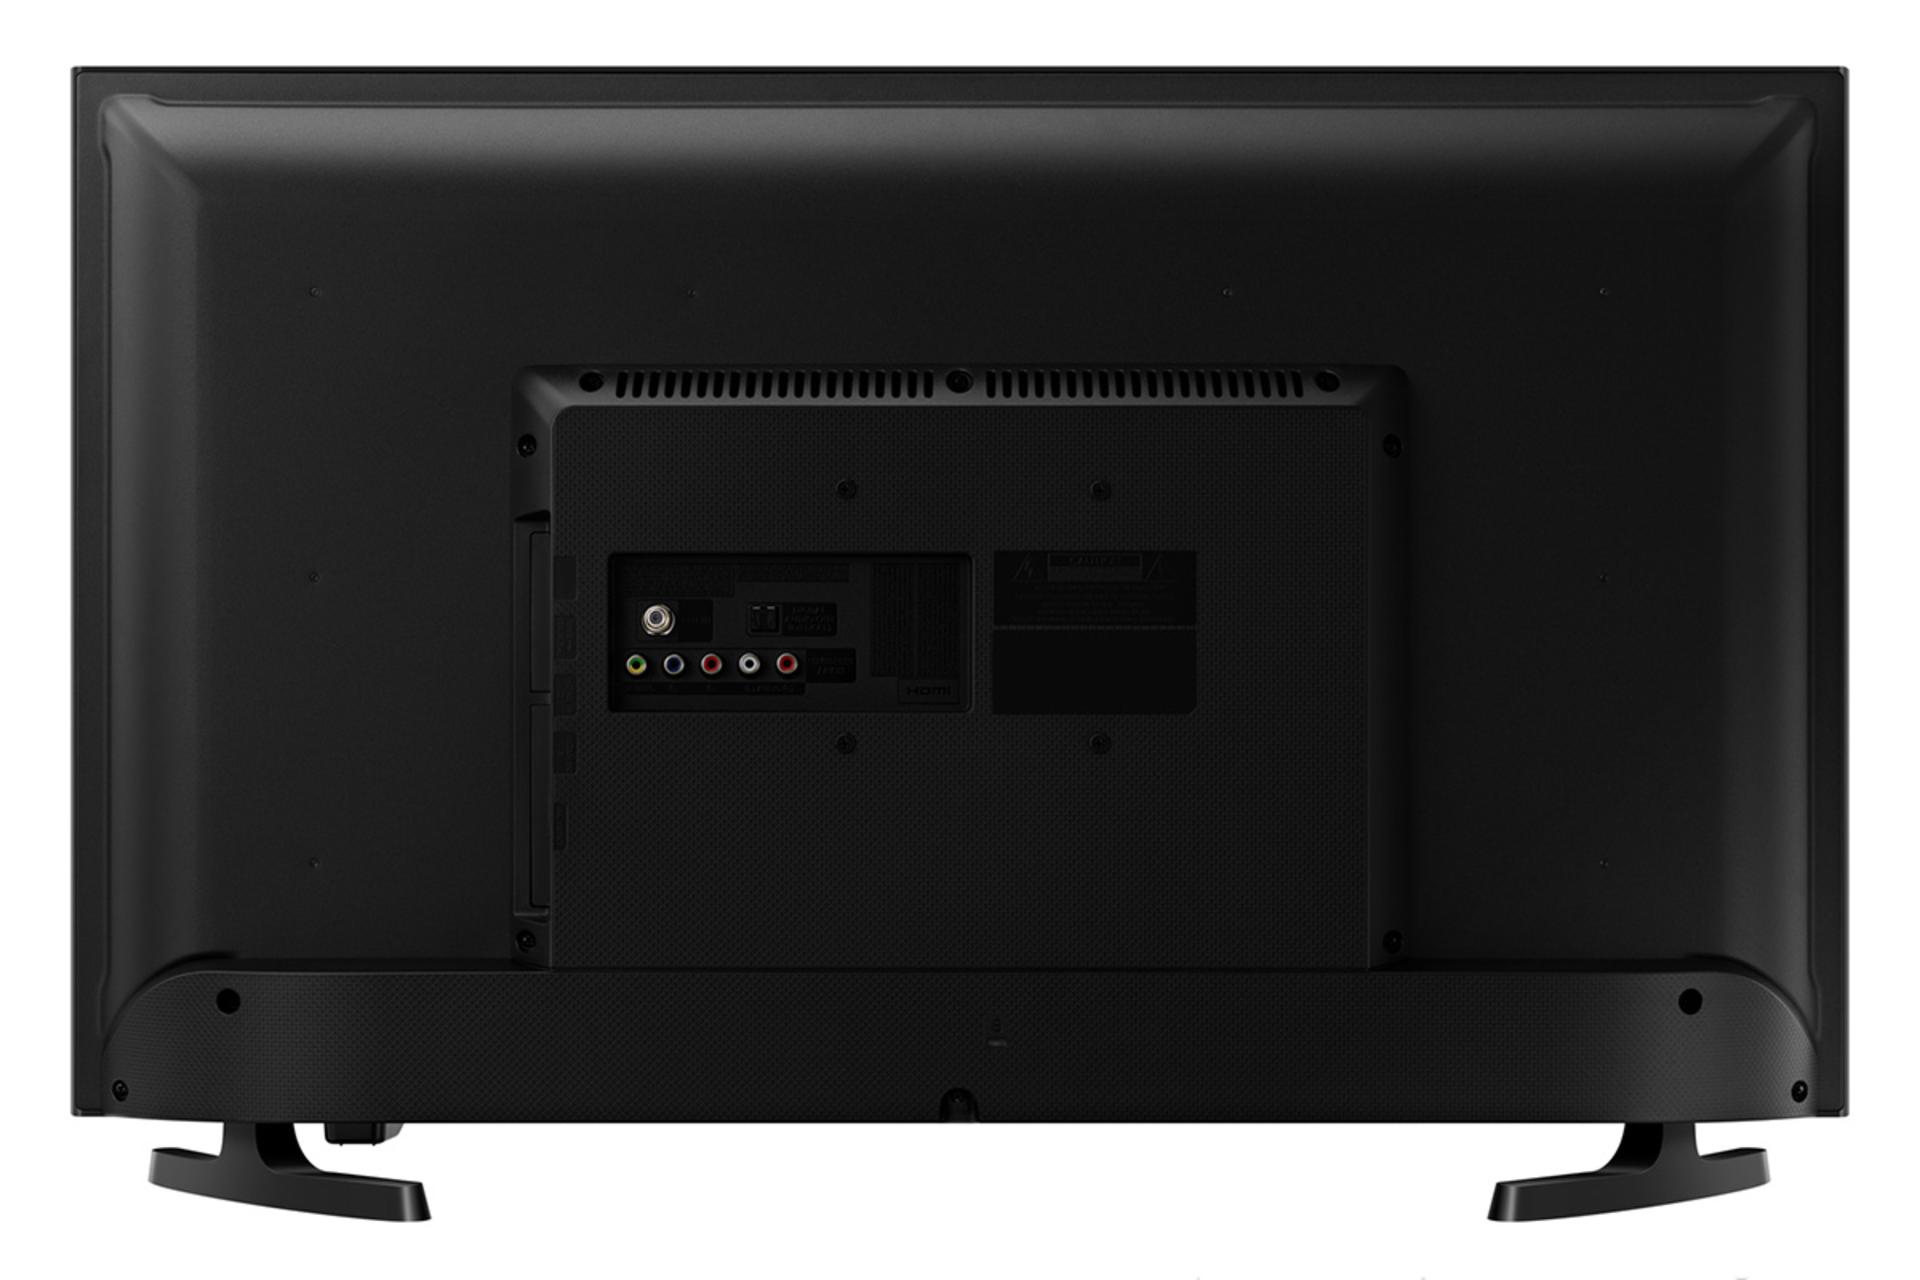 نمای پشت تلویزیون سامسونگ N5300 مدل 32 اینچ و نمایش پورت ها